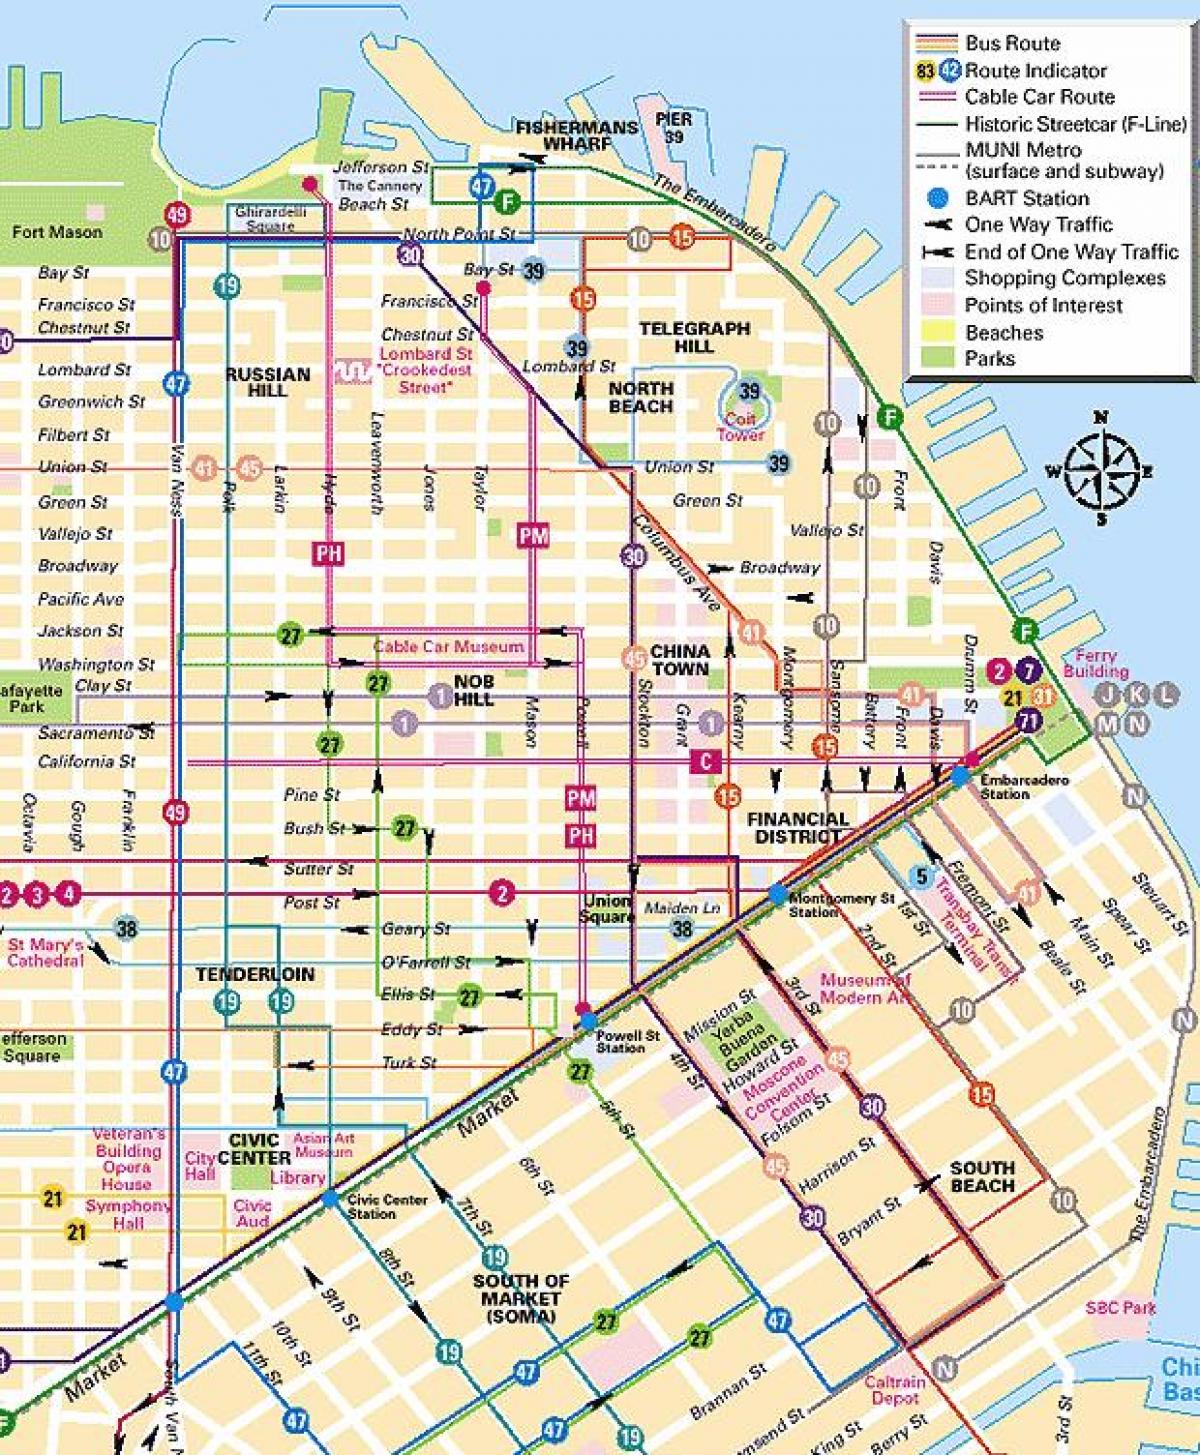 linii de telecabina în San Francisco arată hartă